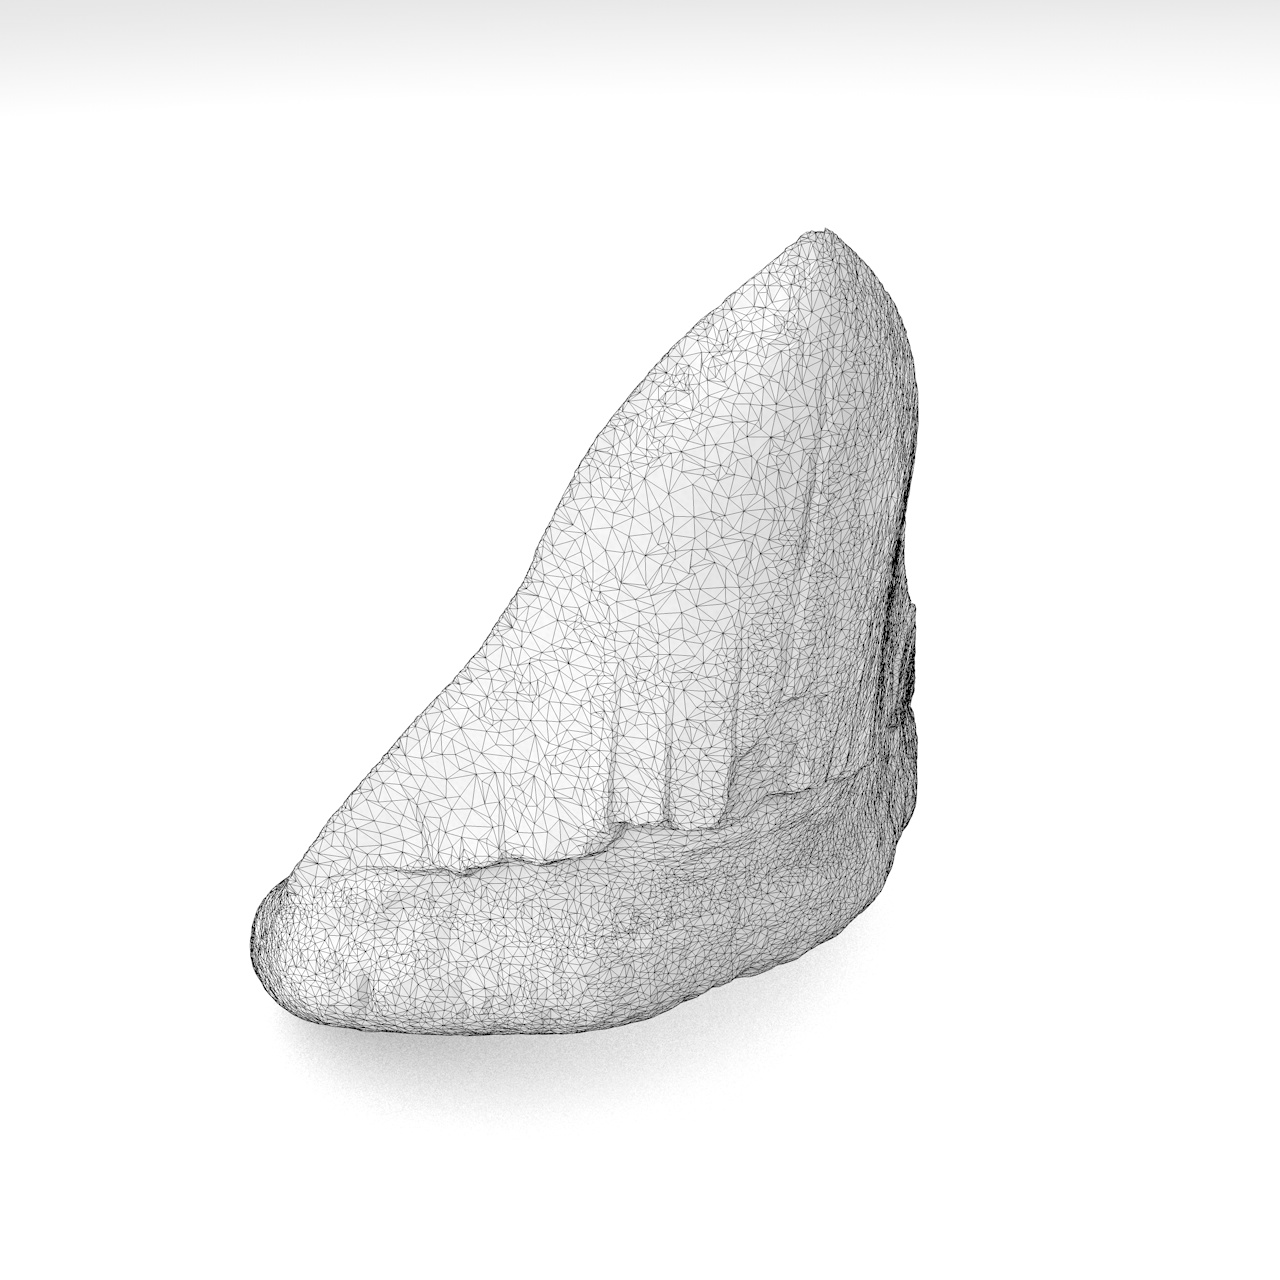 Modelo de impresión 3d de diente de tiburón megalodon